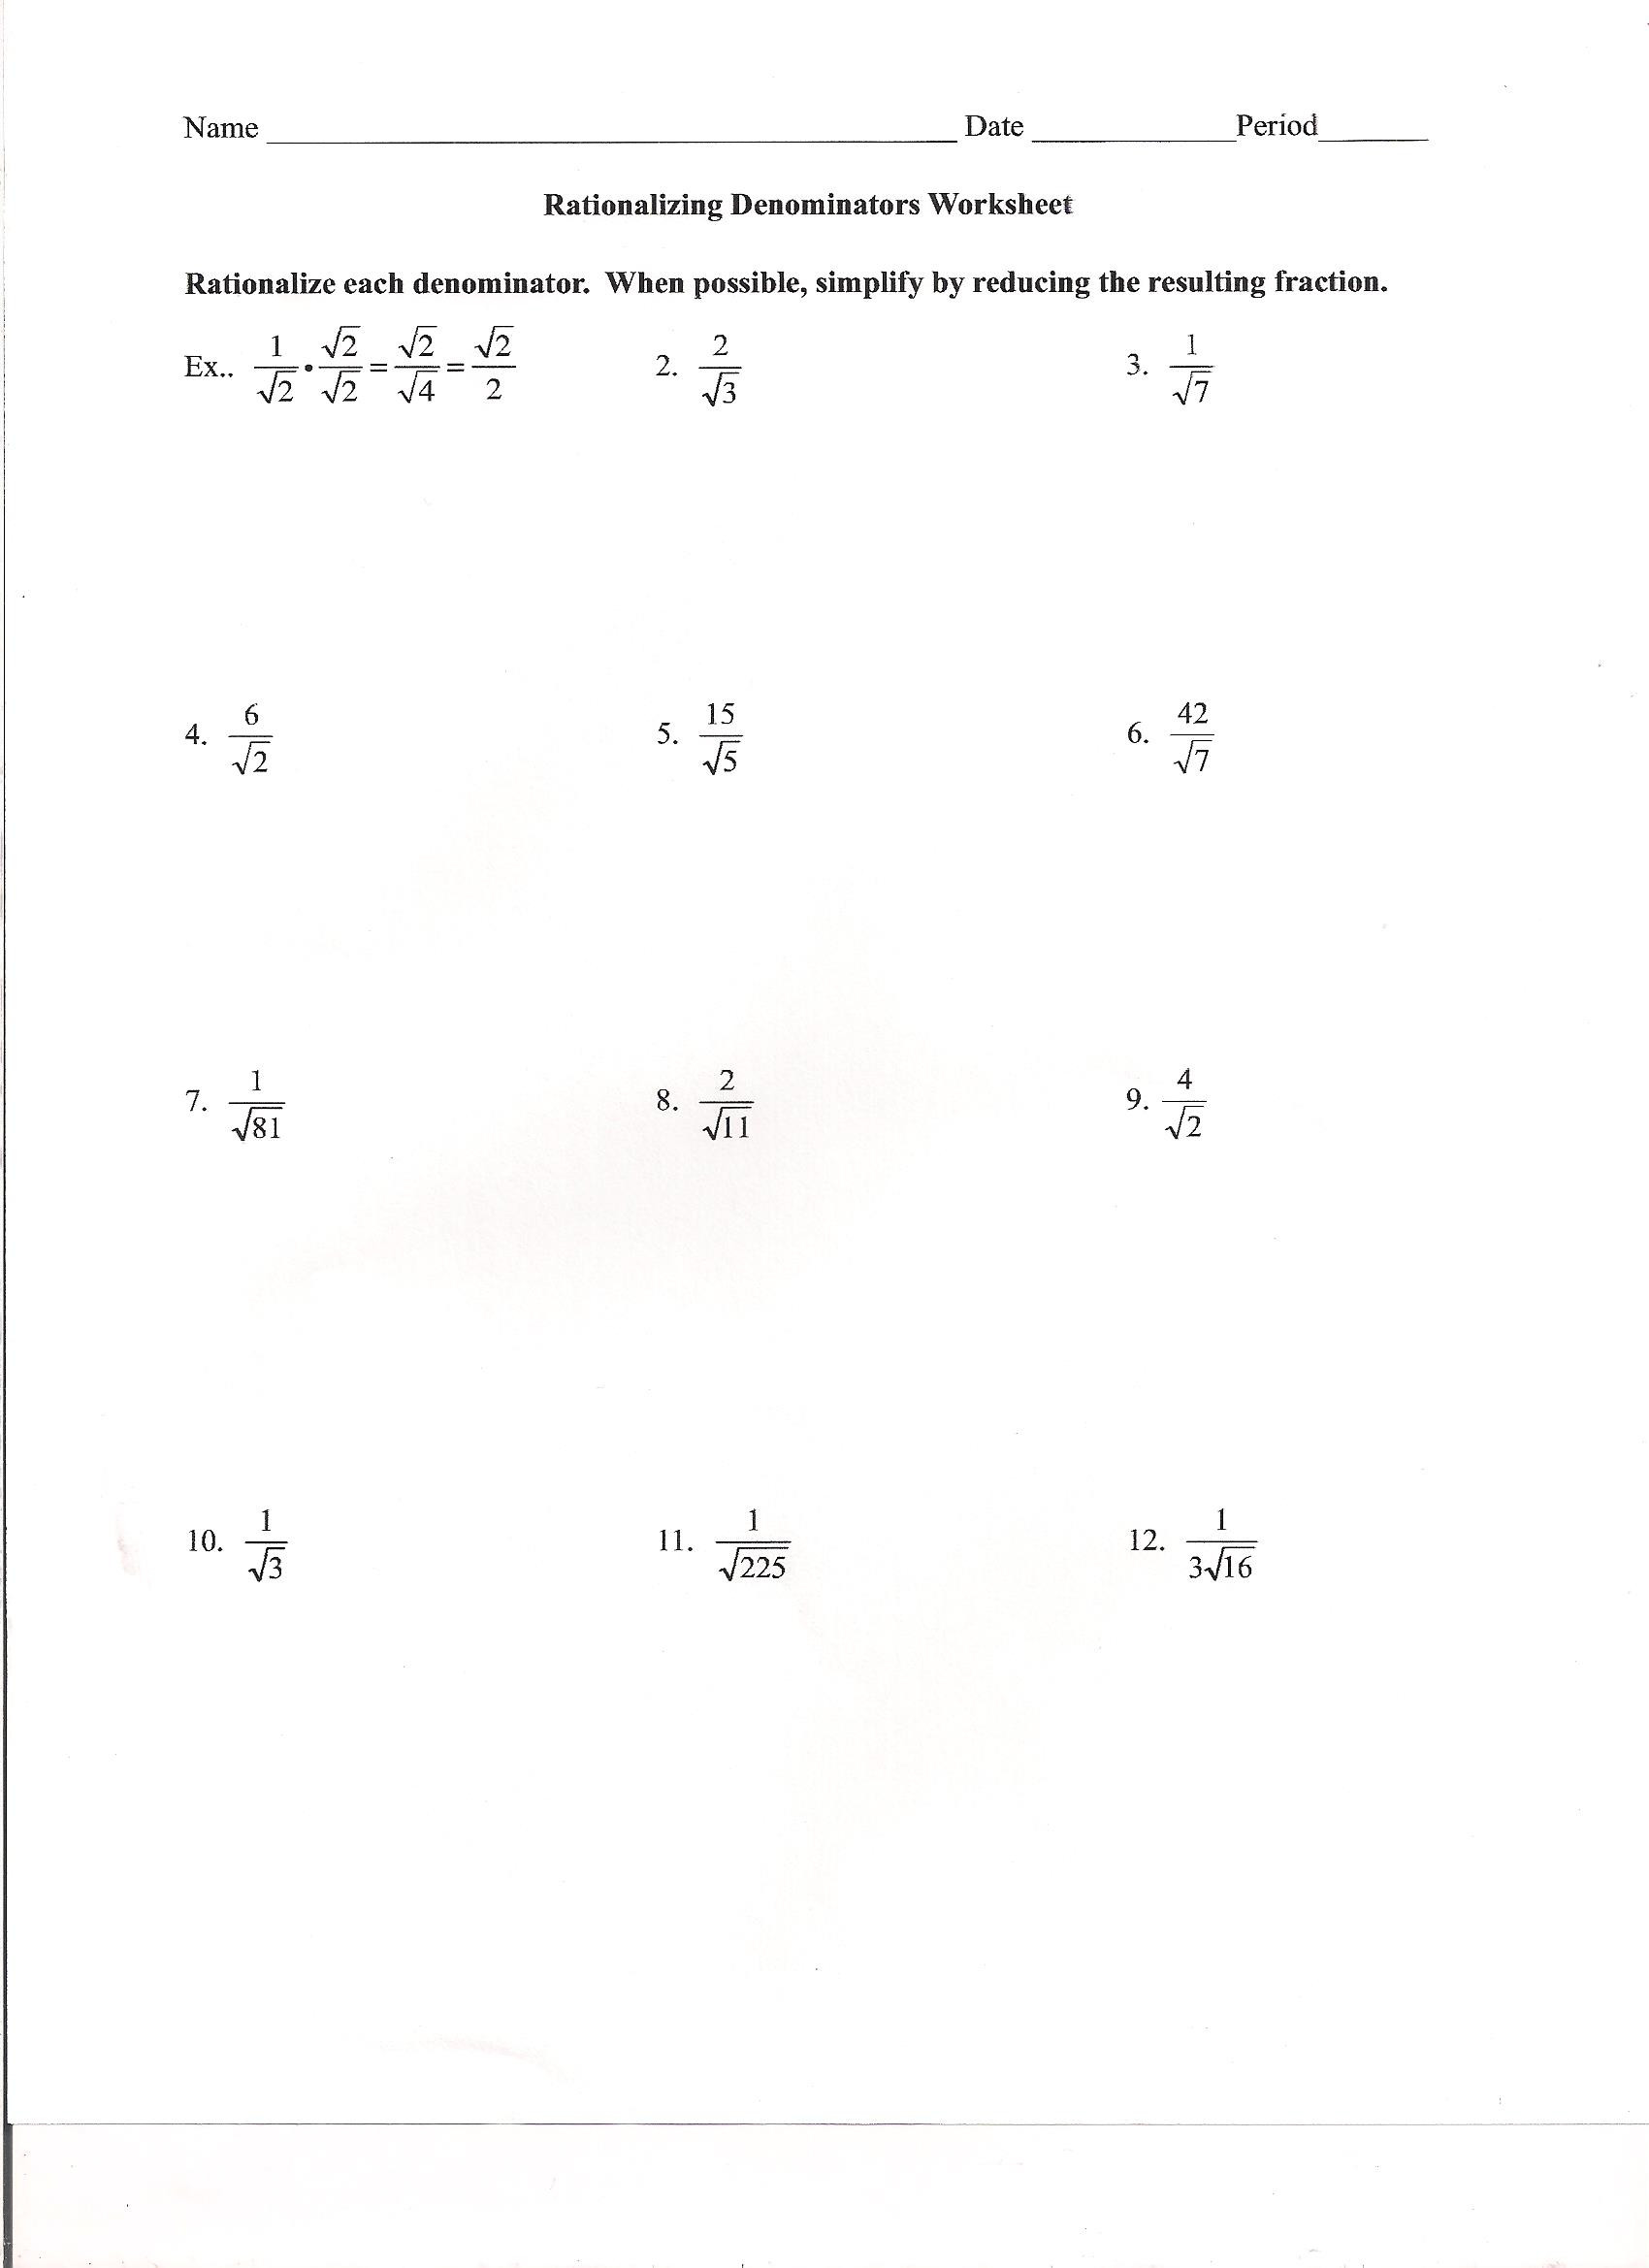 Rationalizing the Denominator Worksheet Fundamental Algebra 2 Homework 2014 Bethlehem Catholic